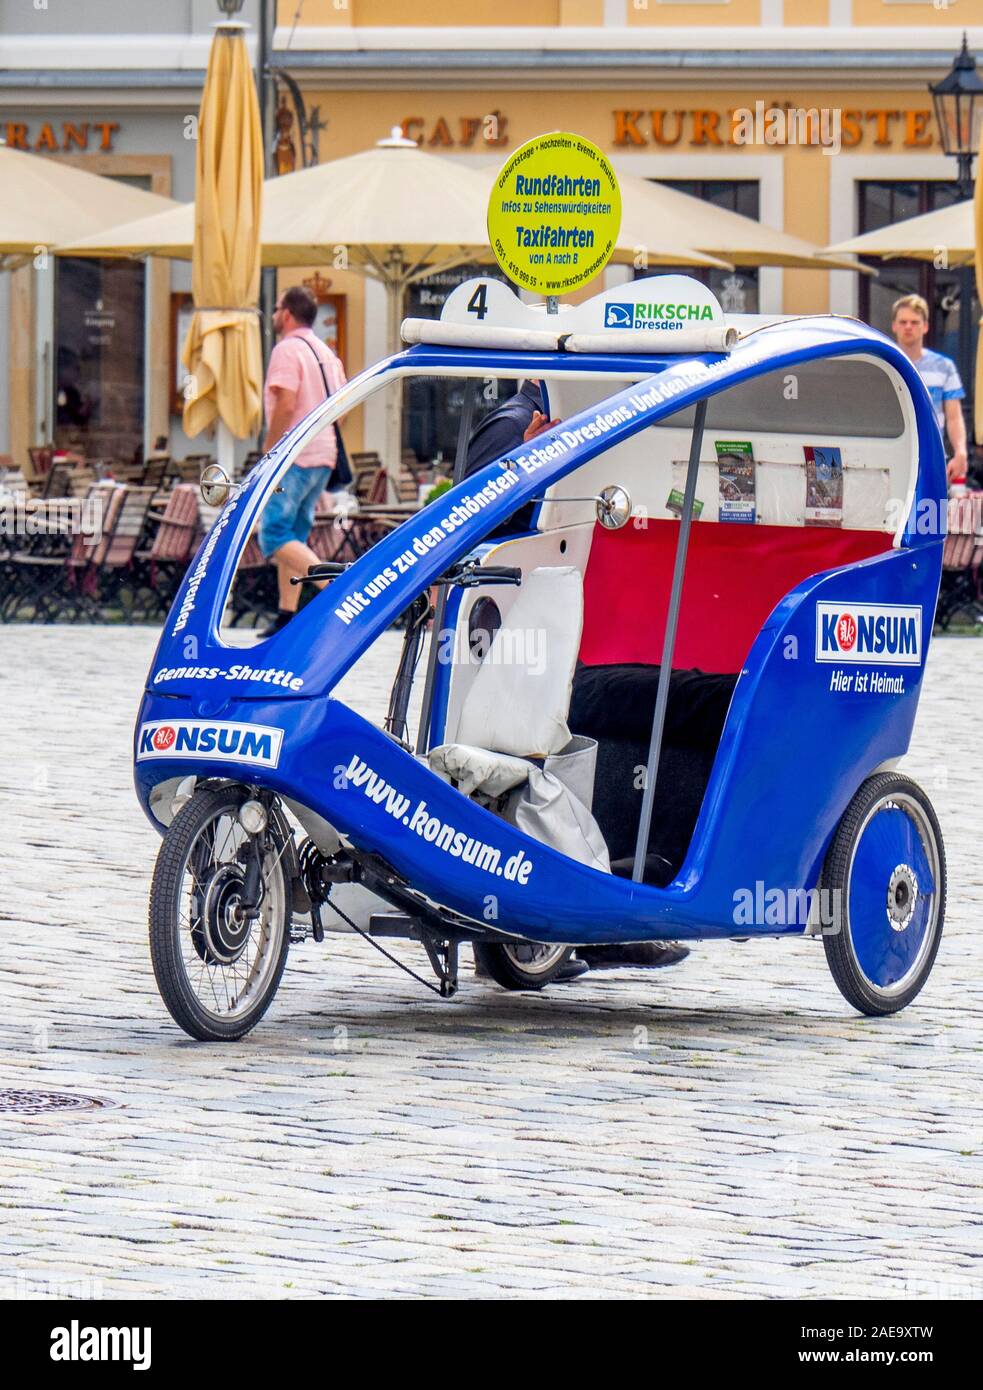 Konsum tricycle taxi in Platz Neumarkt Newmarket Altstadt Dresden Saxony Germany. Stock Photo